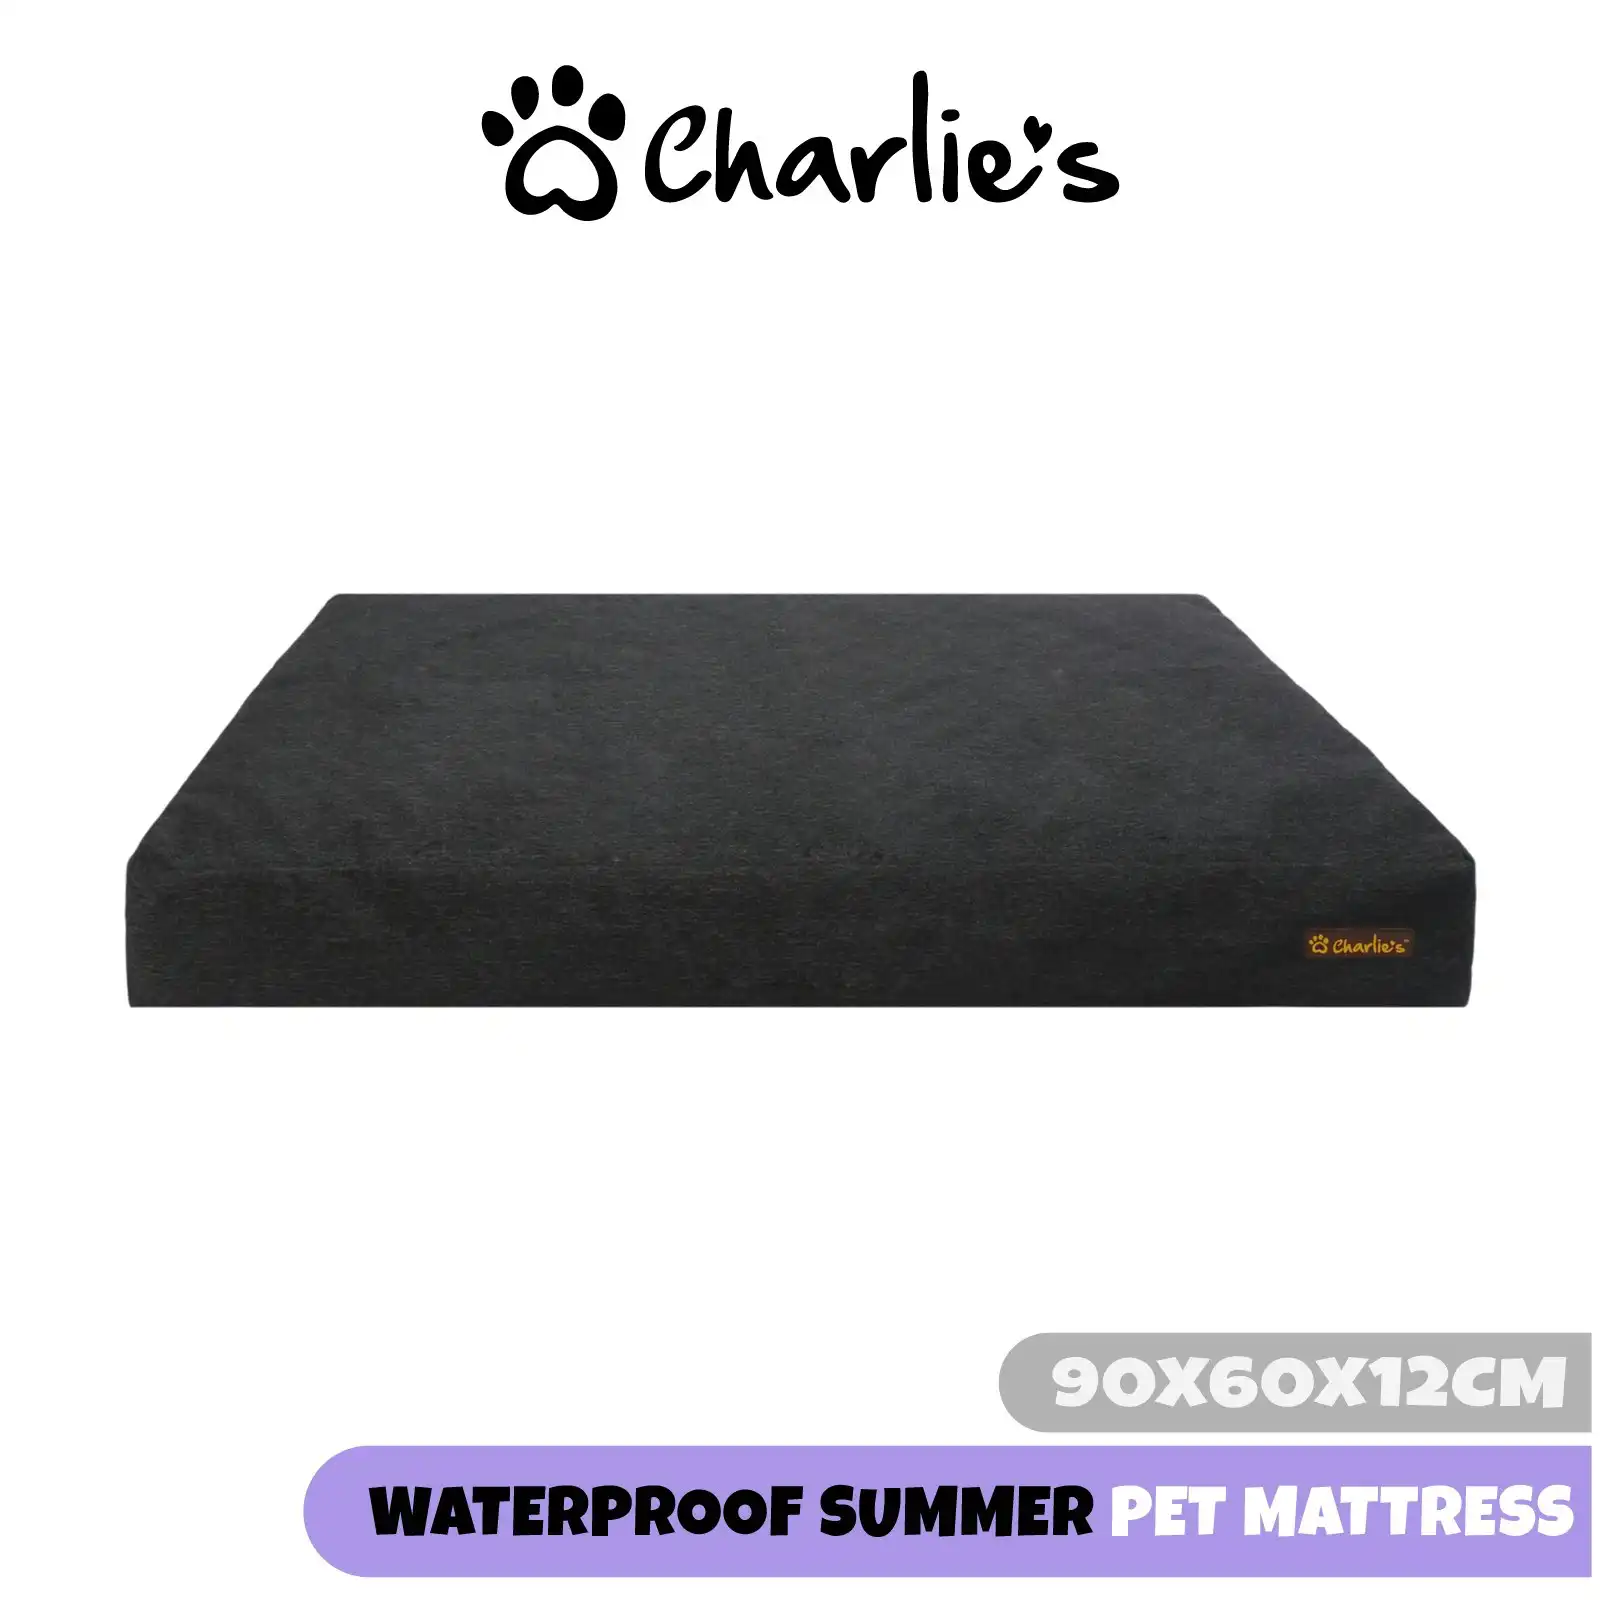 Charlie's Summer Waterproof Pet Mattress Medium